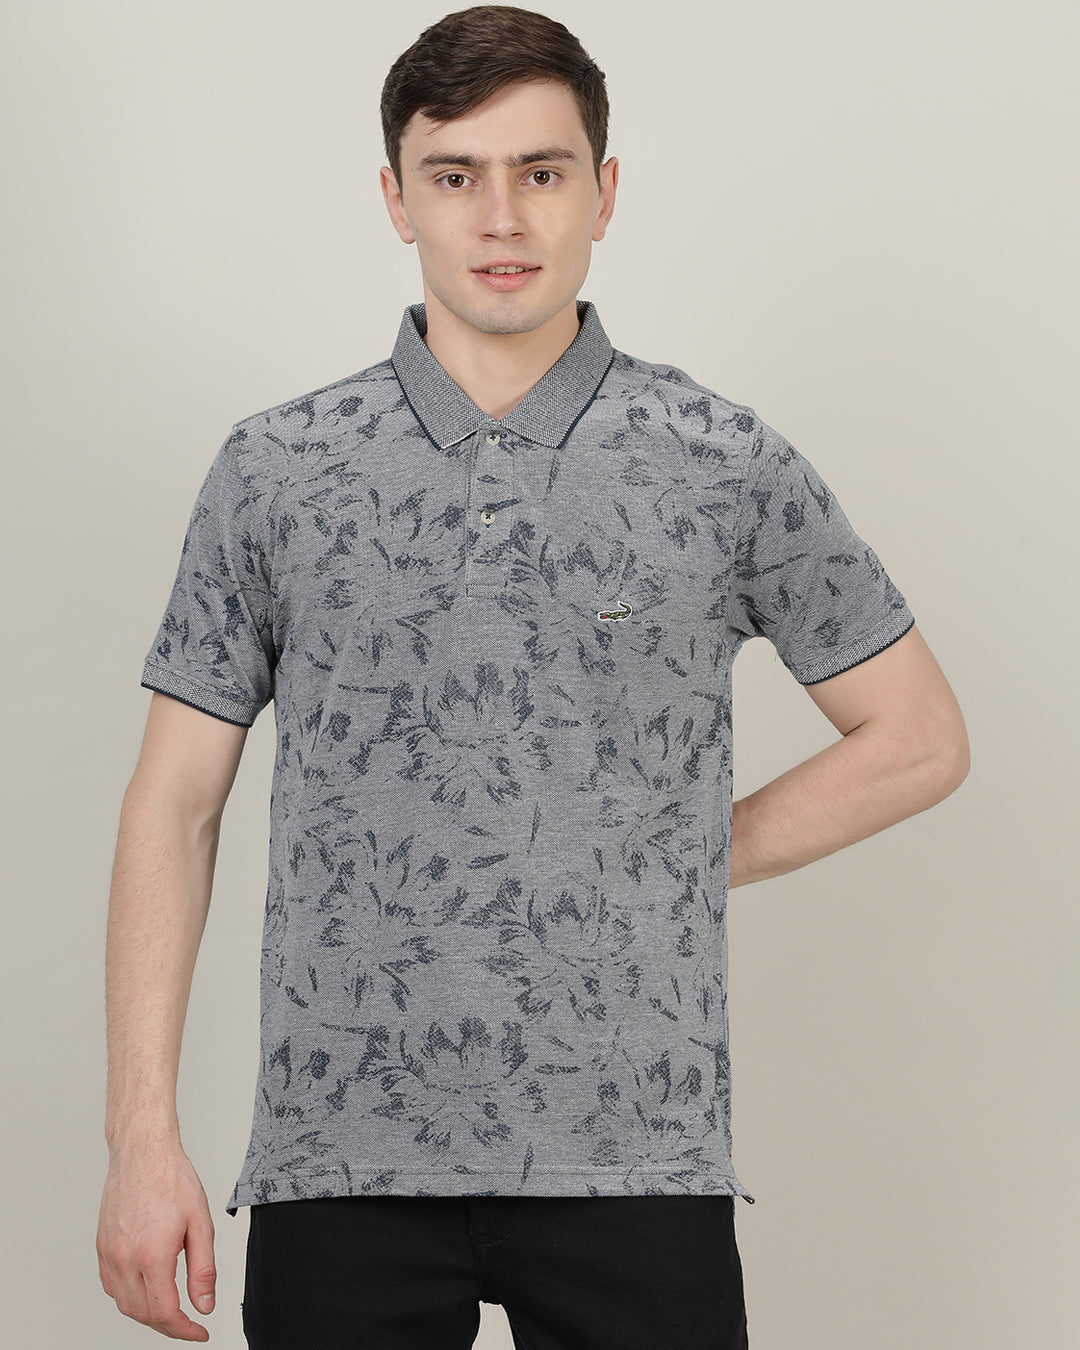 Crocodile Men's AOP Printed Casual T-Shirt